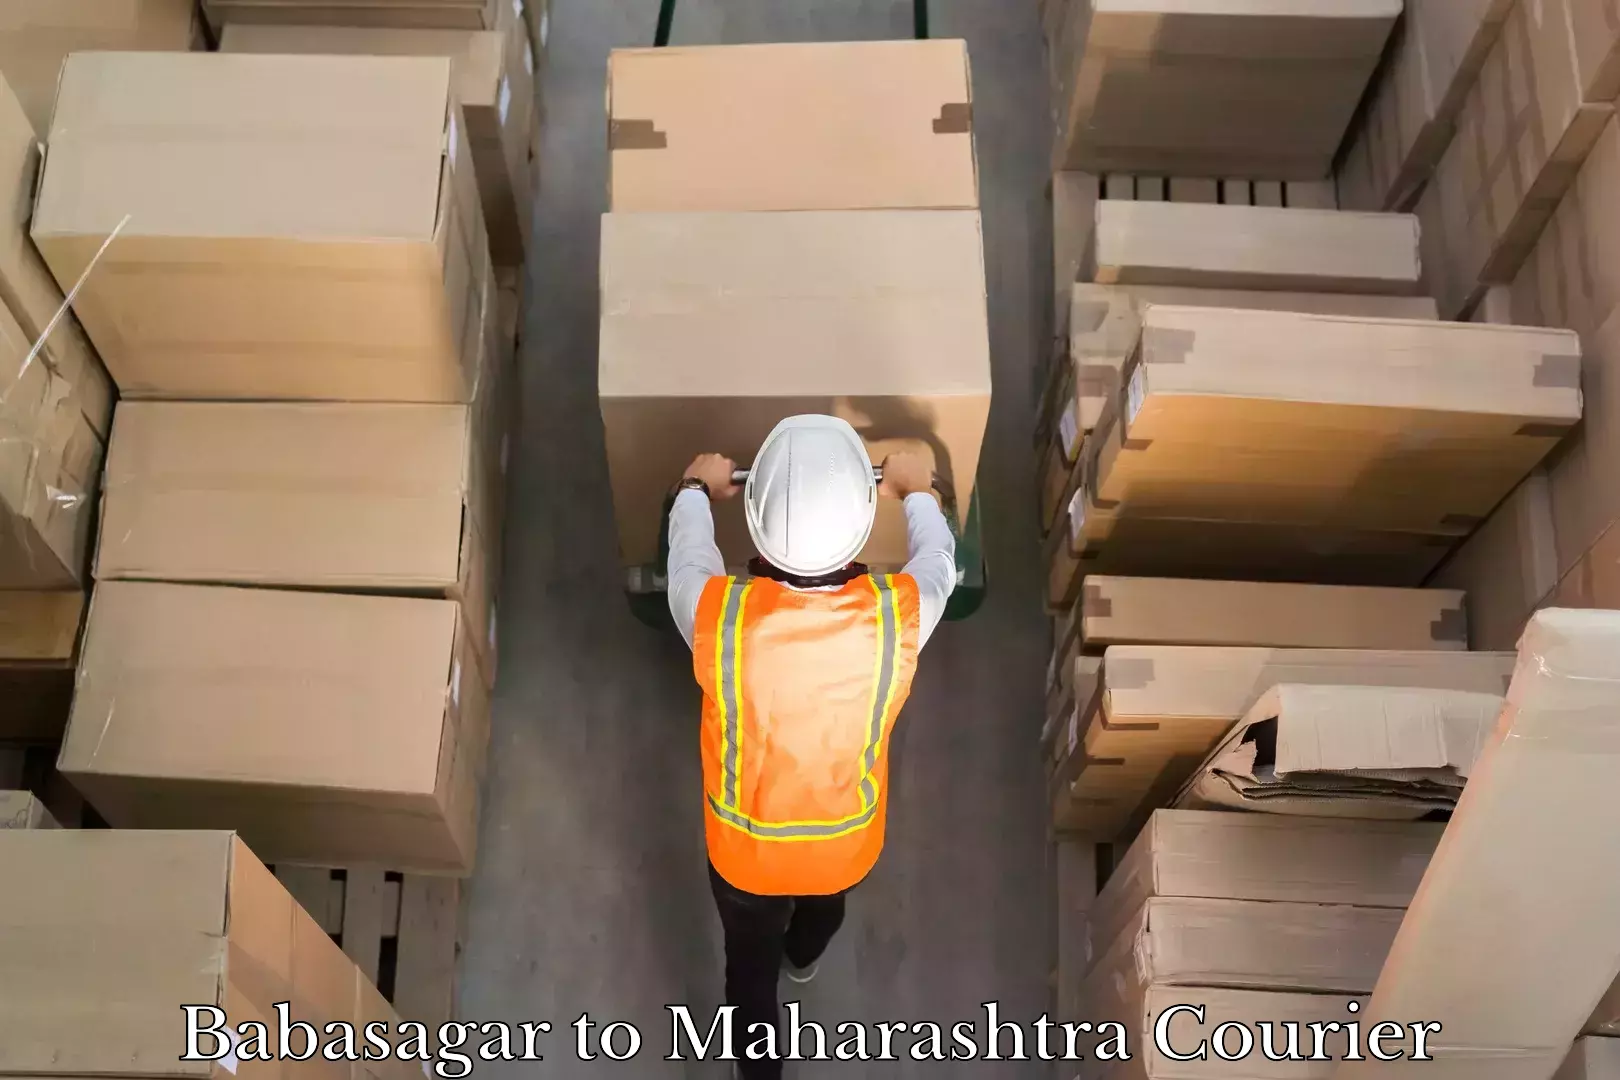 Trackable shipping service Babasagar to Maharashtra